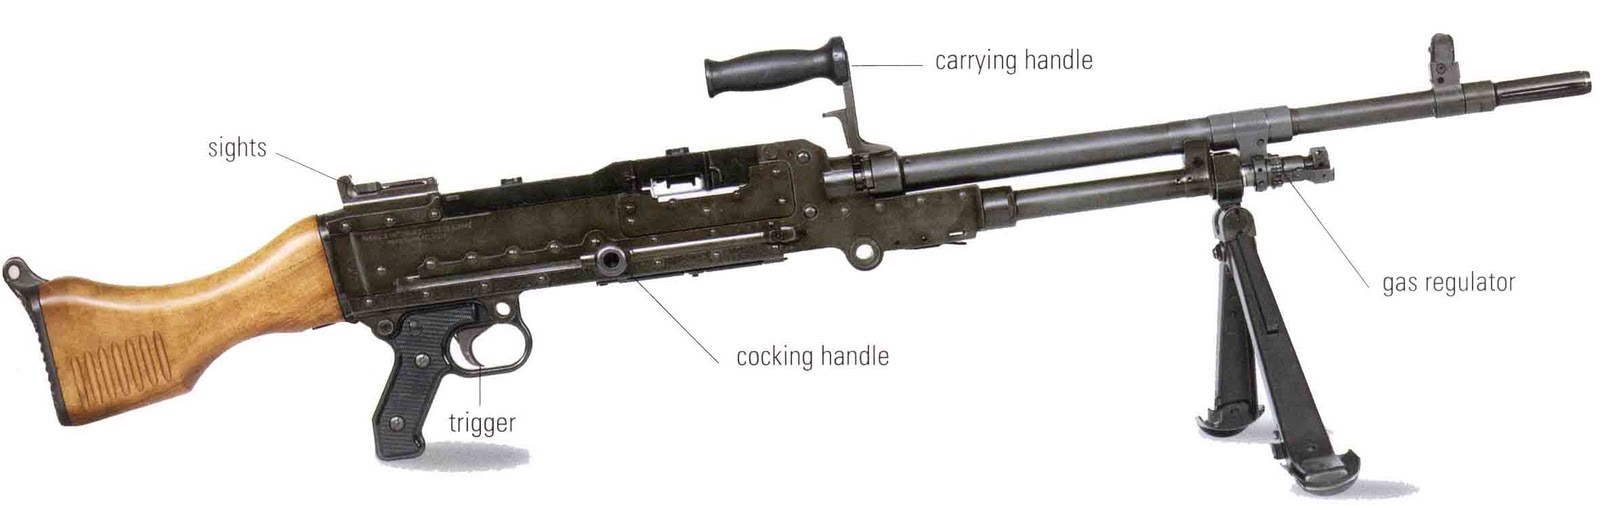 Пулемет fn minimi | энциклопедия оружия